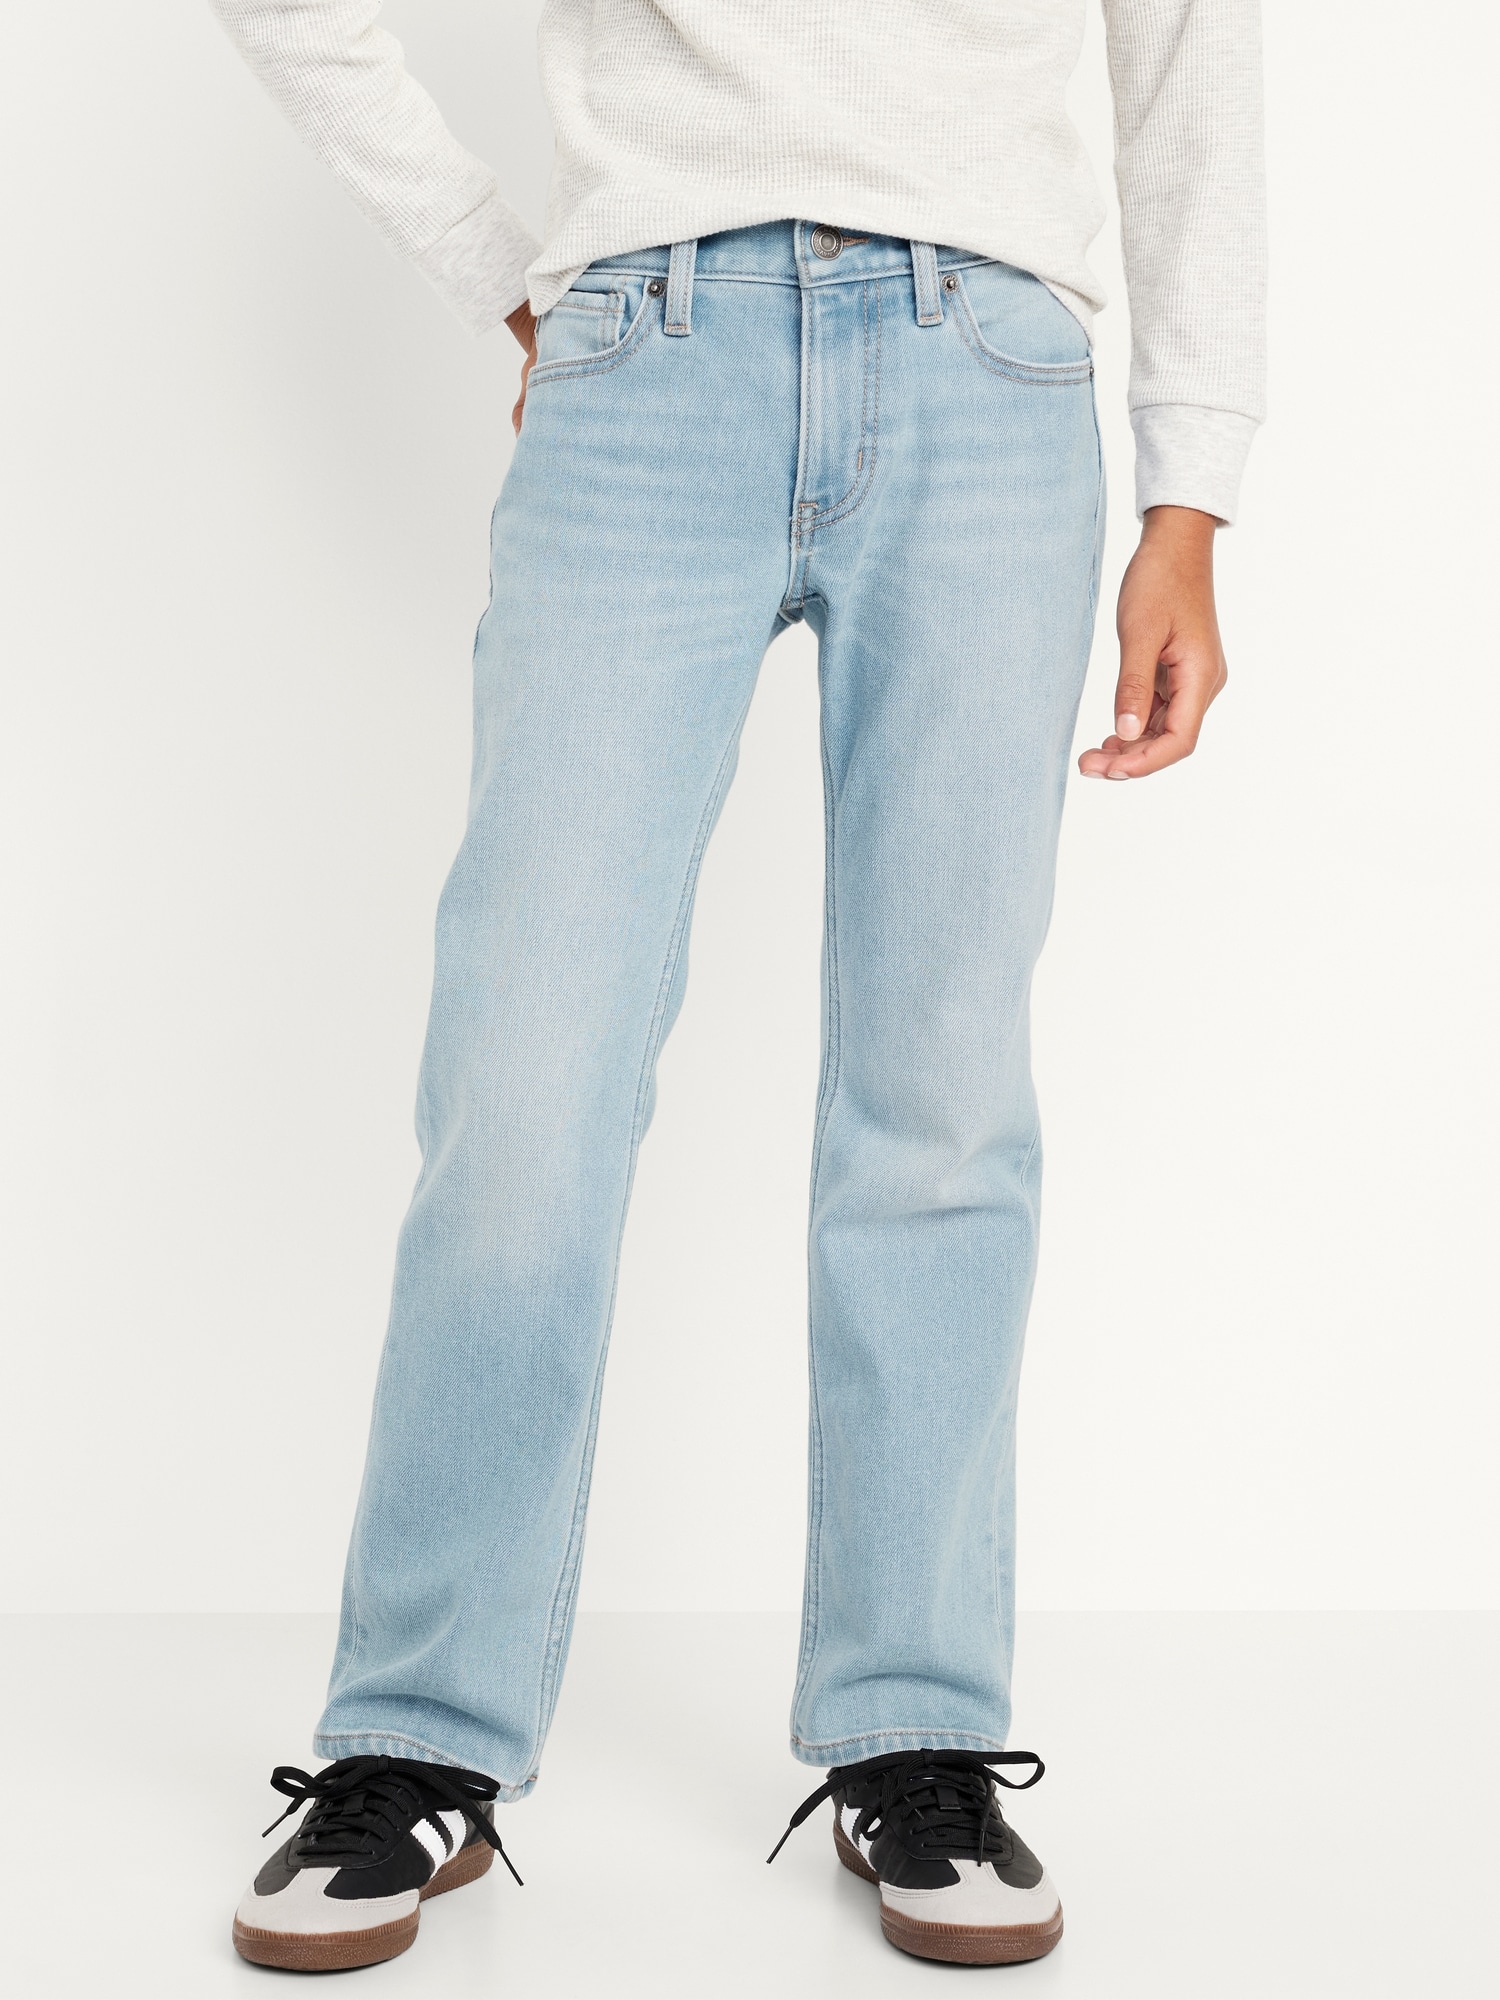 Yyeselk Women's Fleece Lined Jeans for Women Winter Warm Flannel Lined Jeans  Womens High Waisted Skinny Stretch Pants 